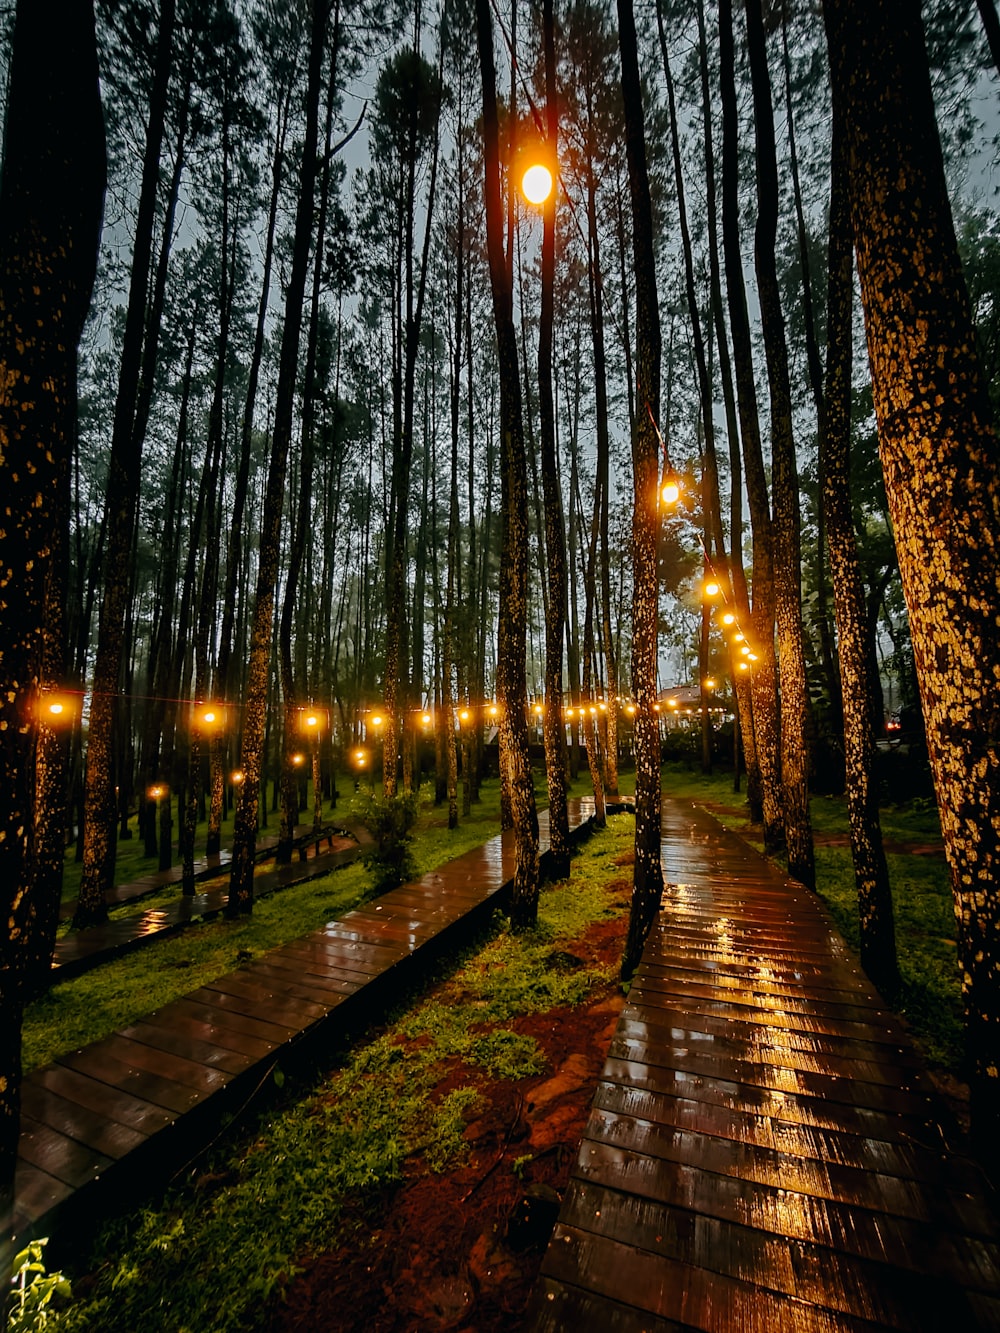 Un camino bordeado de árboles con luces